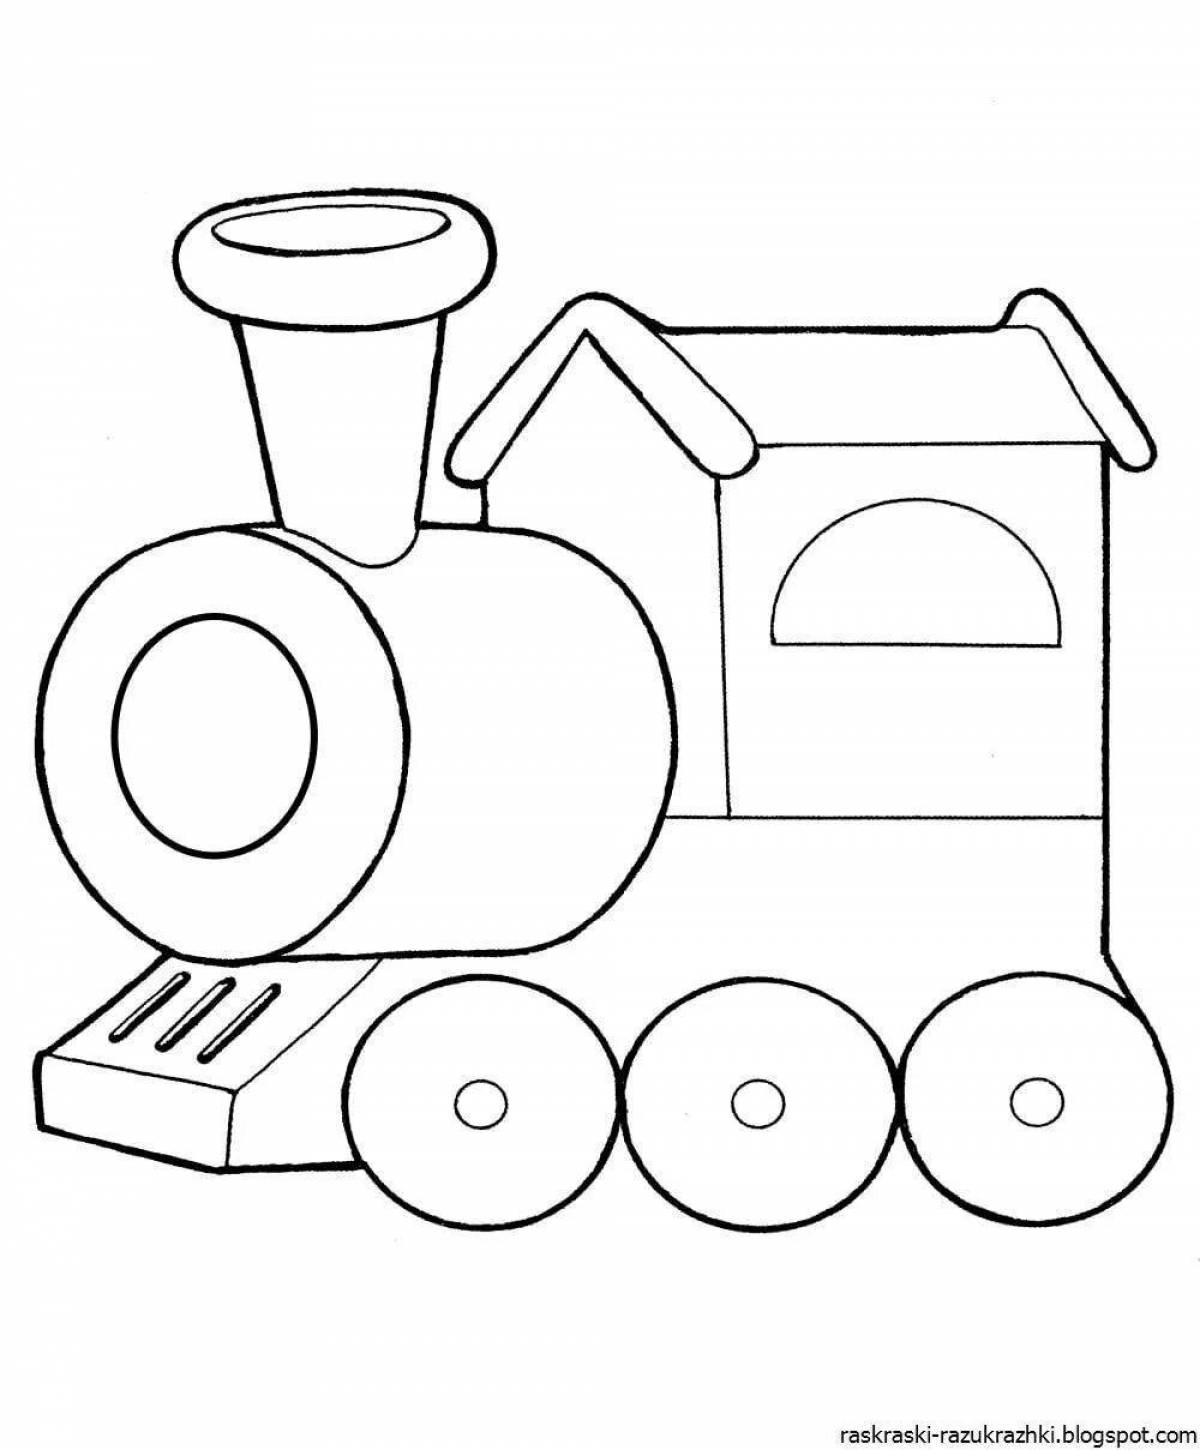 Веселая раскраска поезда для детей 3-4 лет